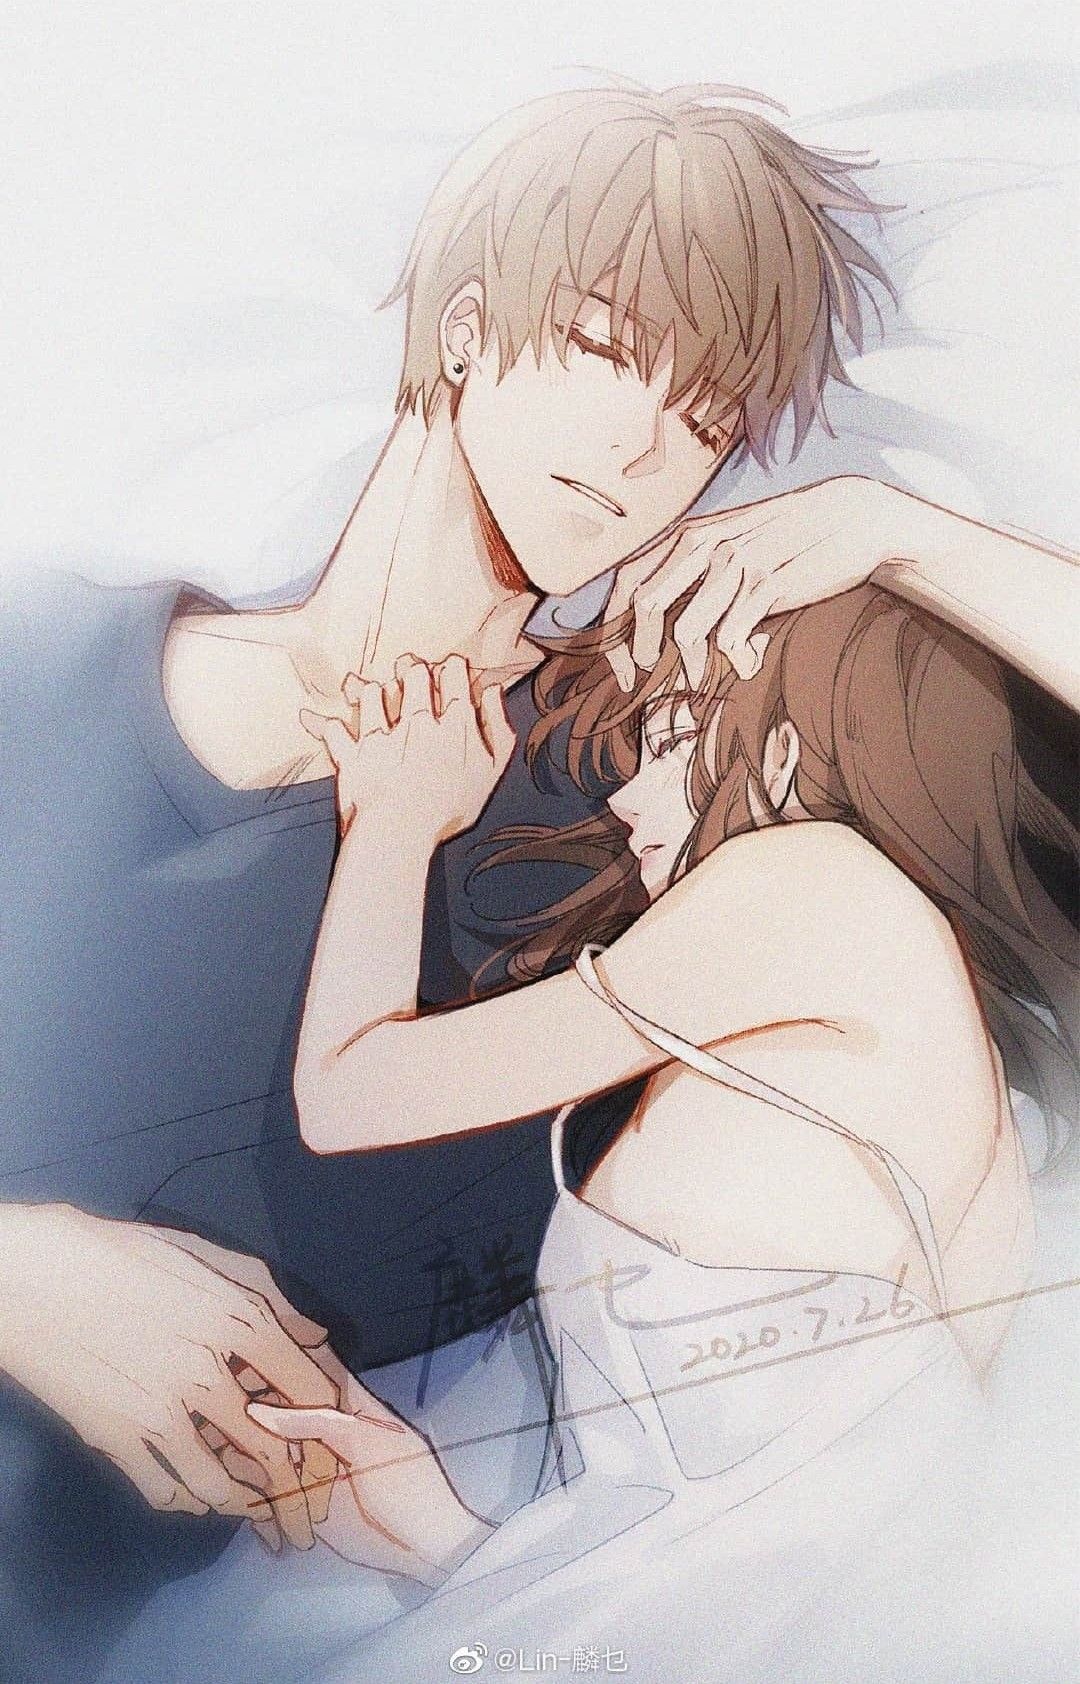 artemio francisco share cute anime couple sleeping photos